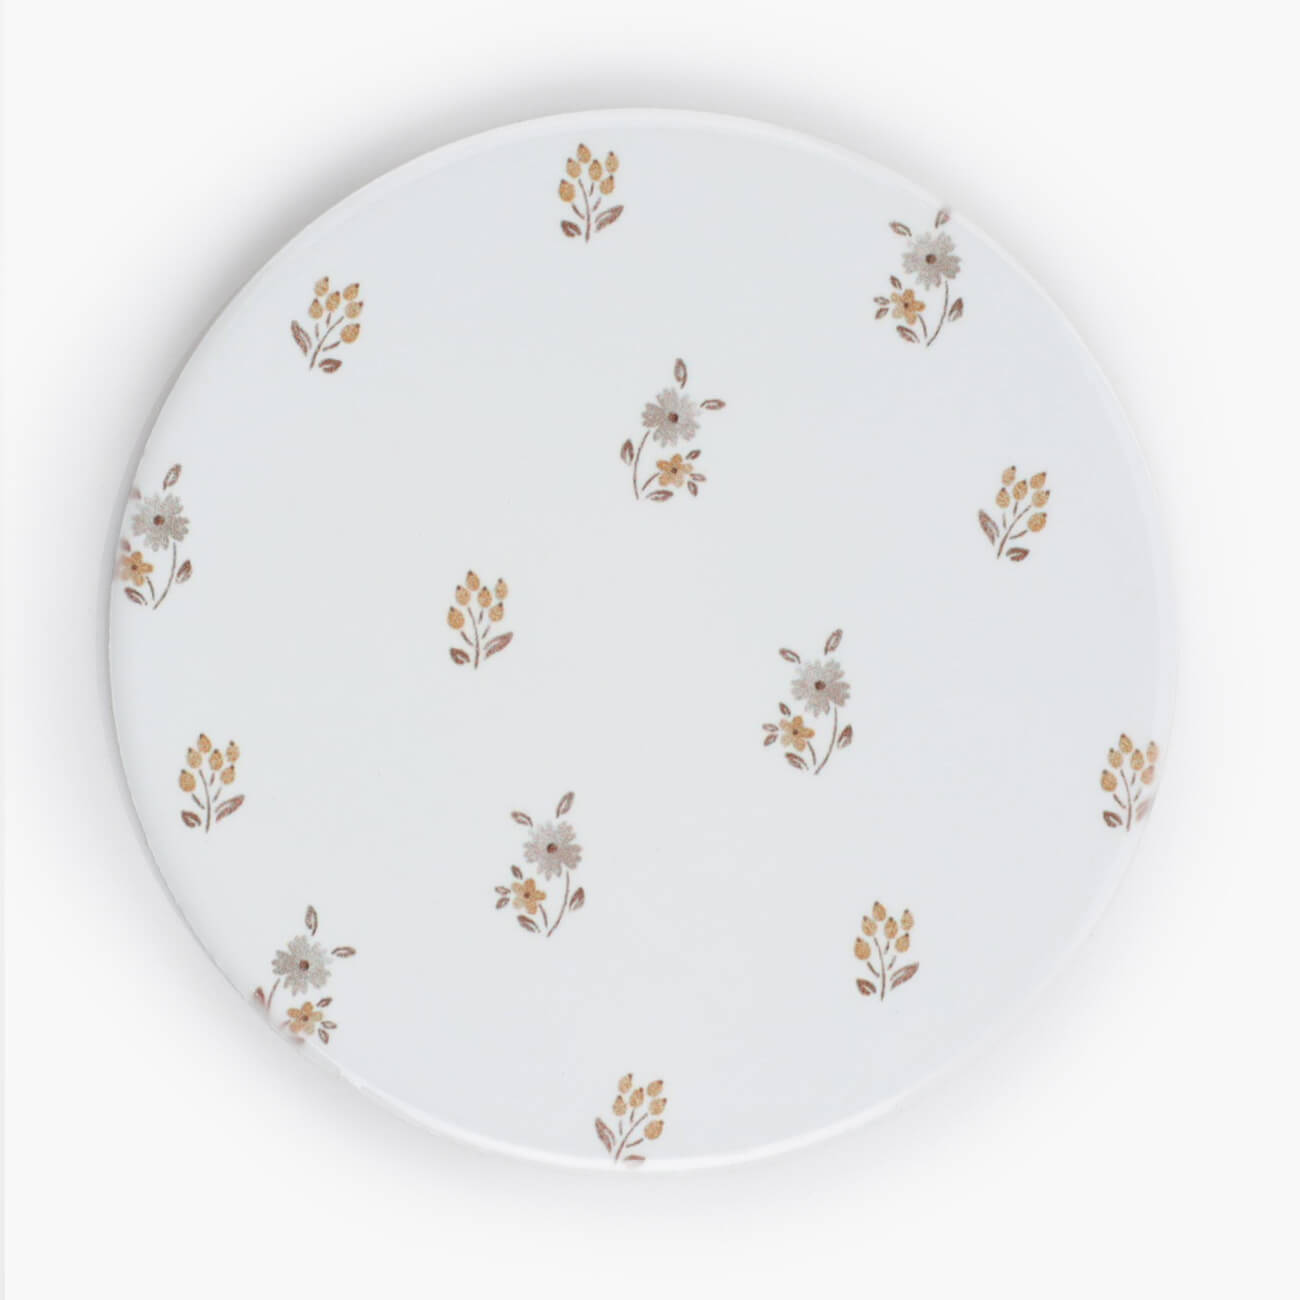 Подставка под кружку, 11 см, керамика/пробка, круглая, молочная, Винтажные цветы, La flore форма для запекания 25 см керамика круглая молочная cakes ivory